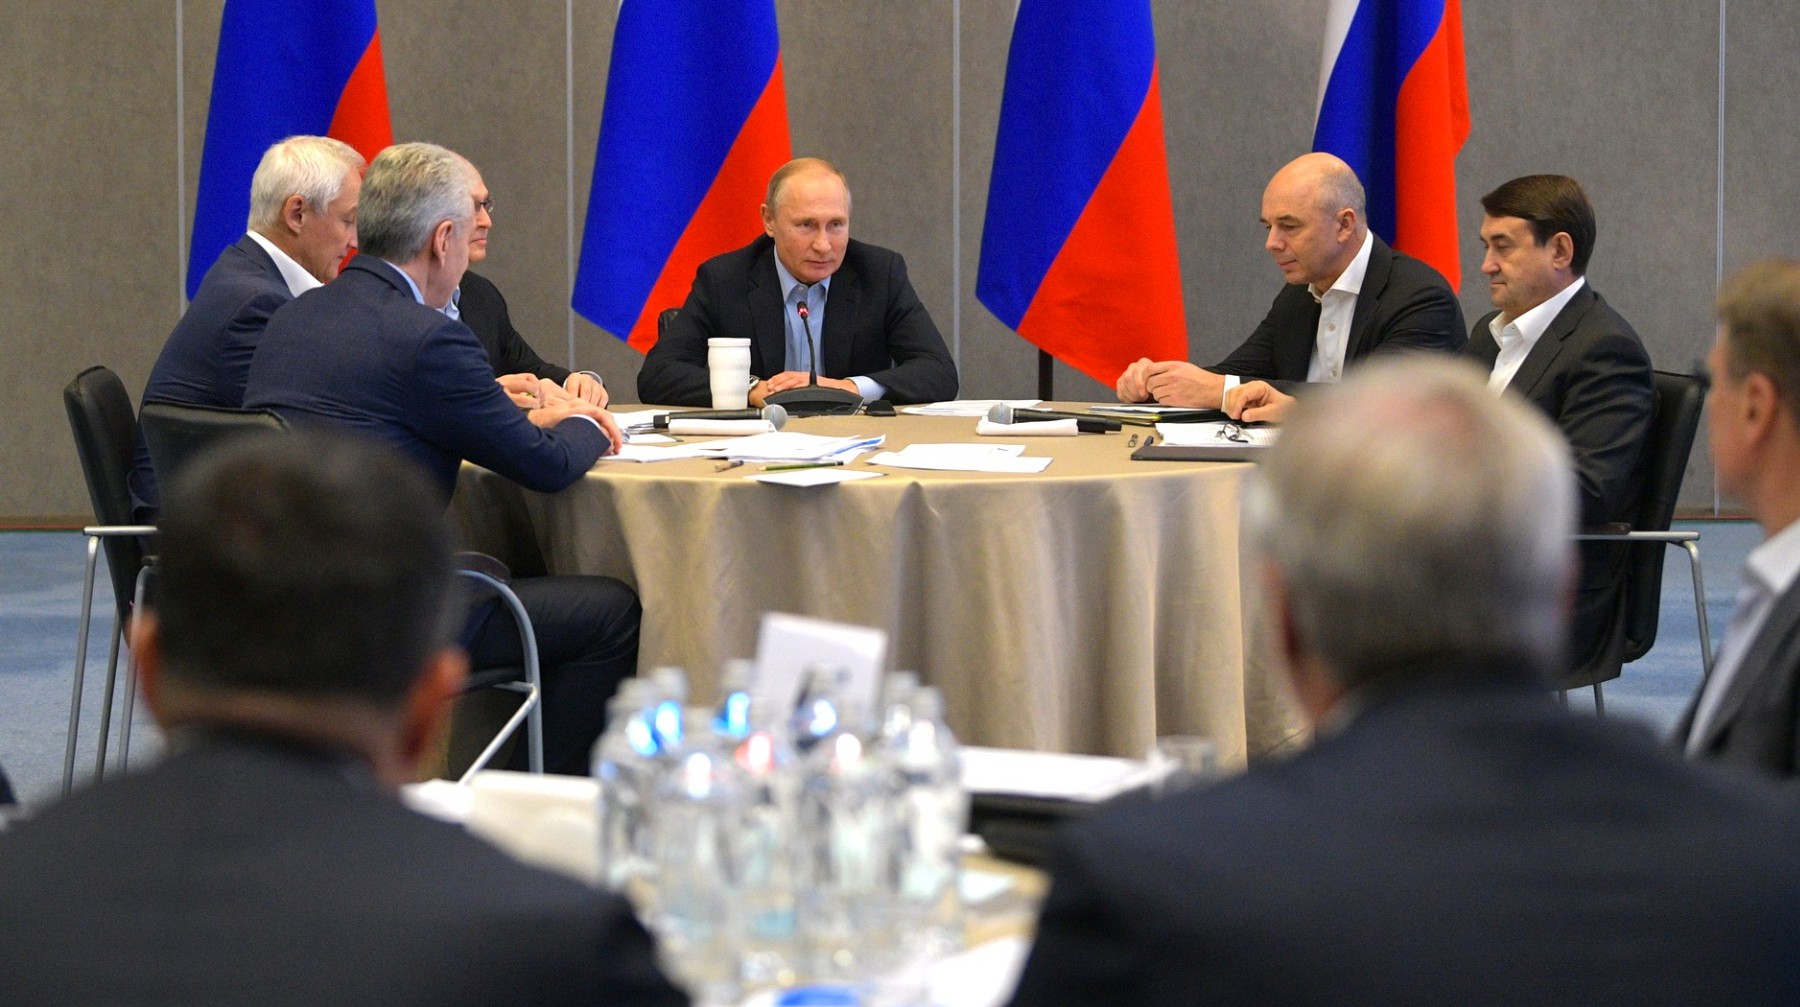 Dailystorm - Порошенко отреагировал на проведение Путиным заседания Госсовета в Крыму